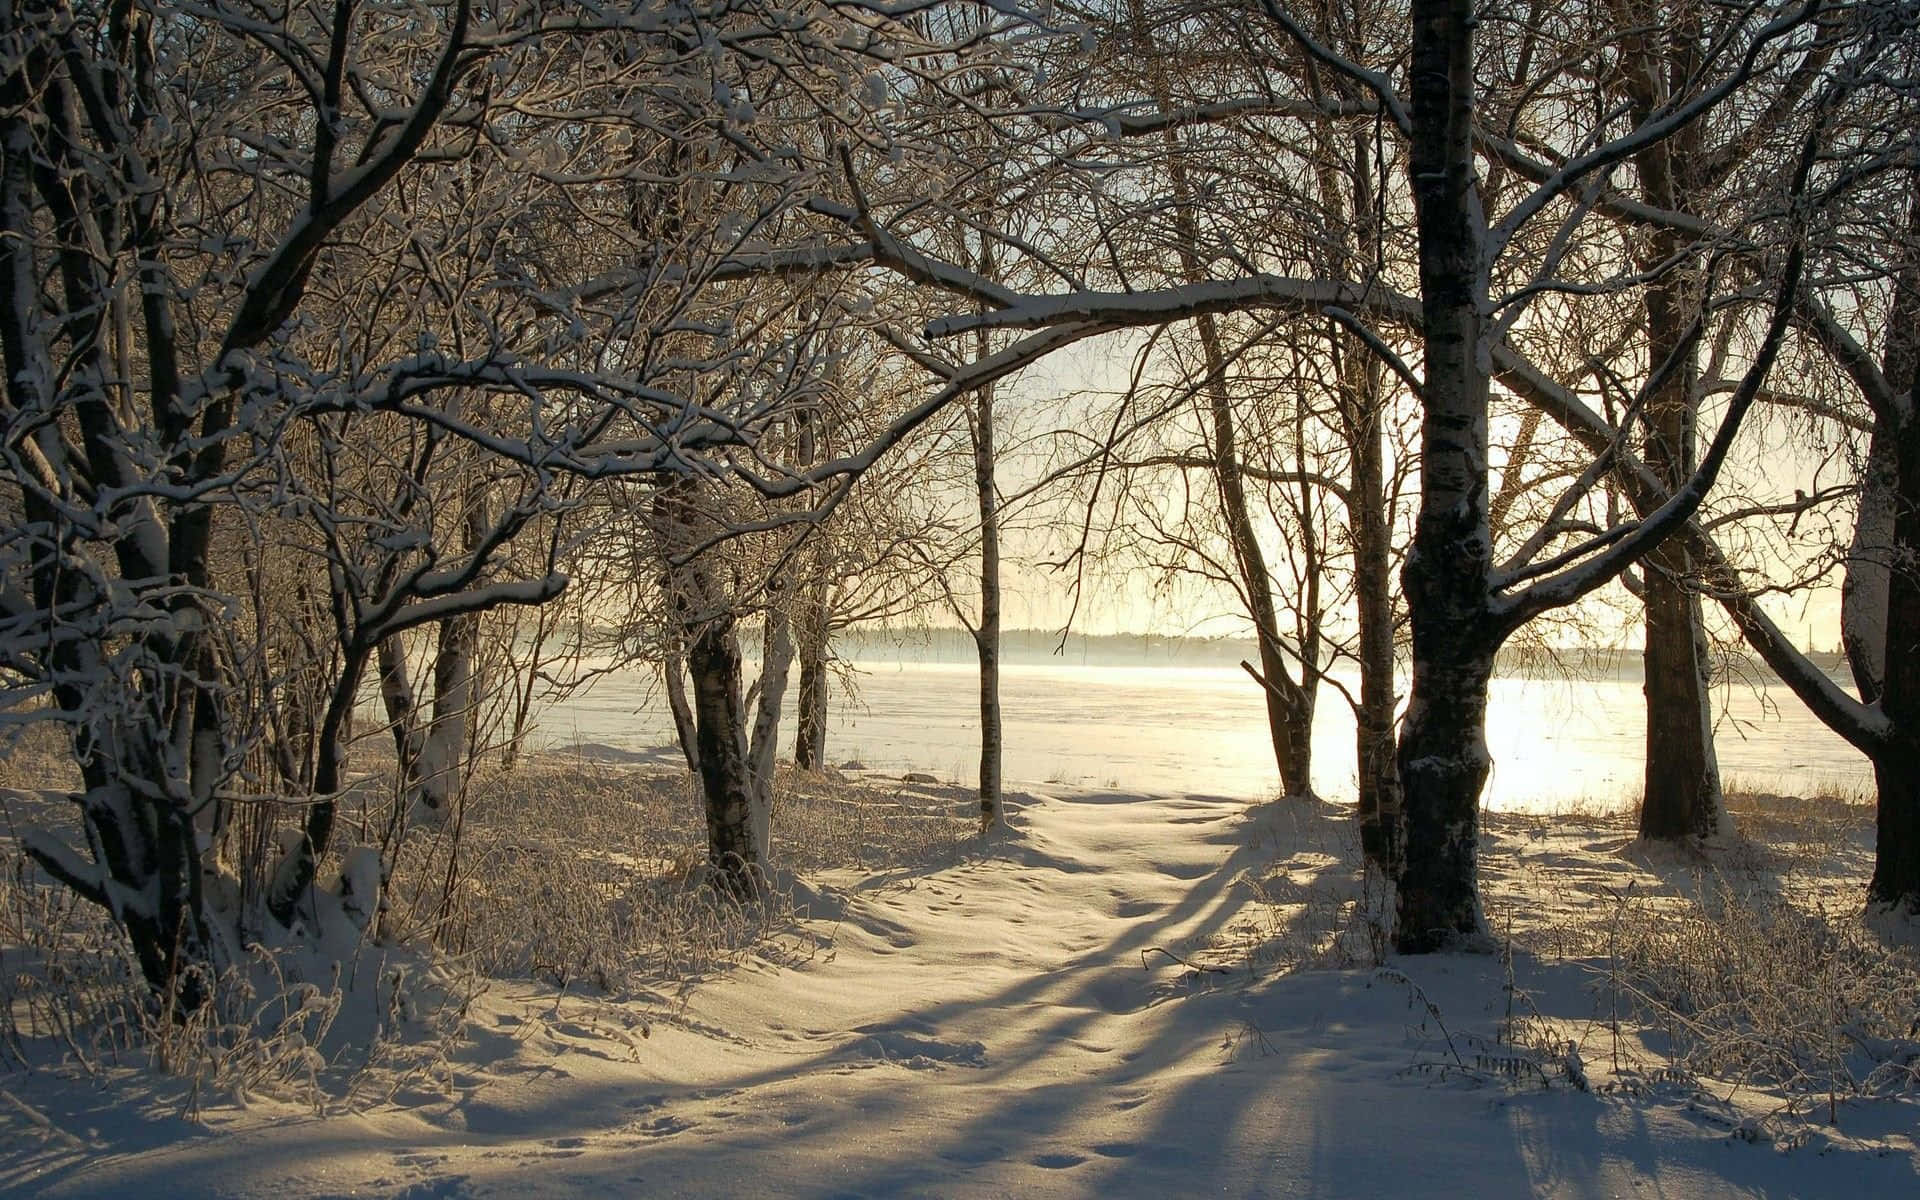 Snowy Winter Trees in a Serene Landscape Wallpaper